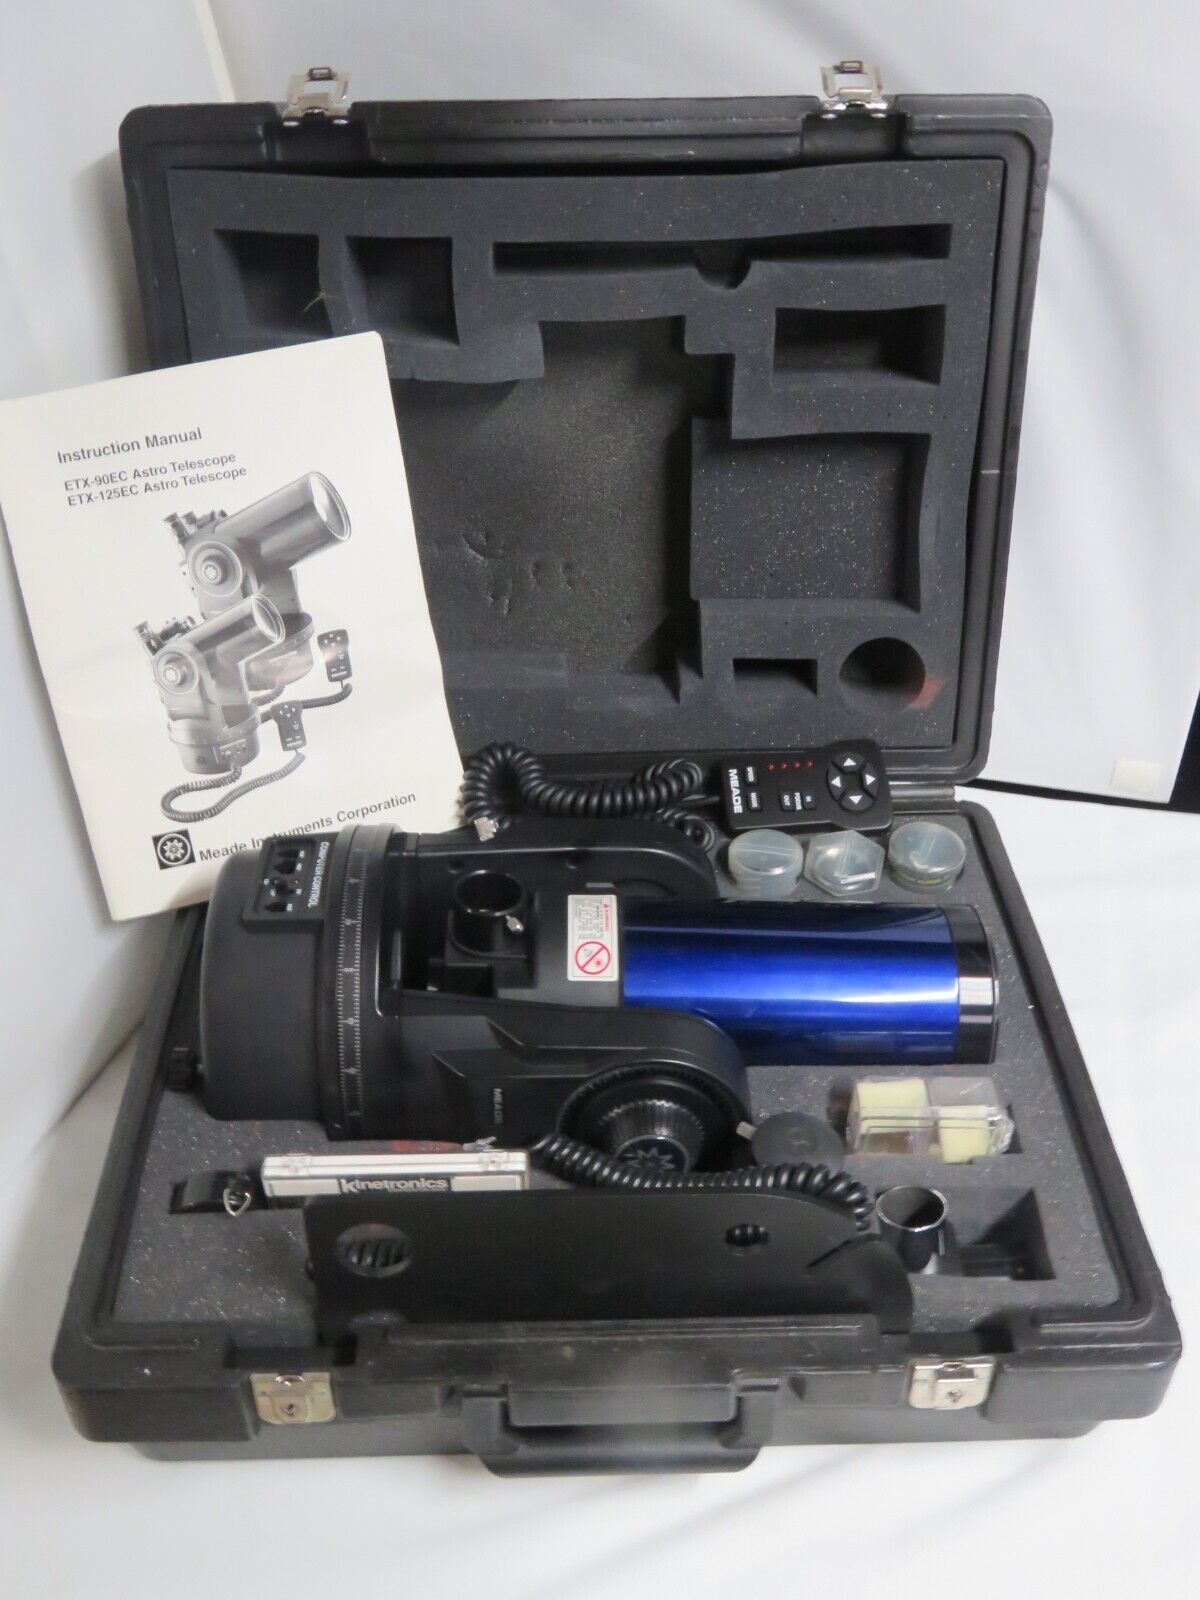 Meade ETX-90/EC Maksutov Catadioptric Telescope & Case & Accessories - EXCELLENT